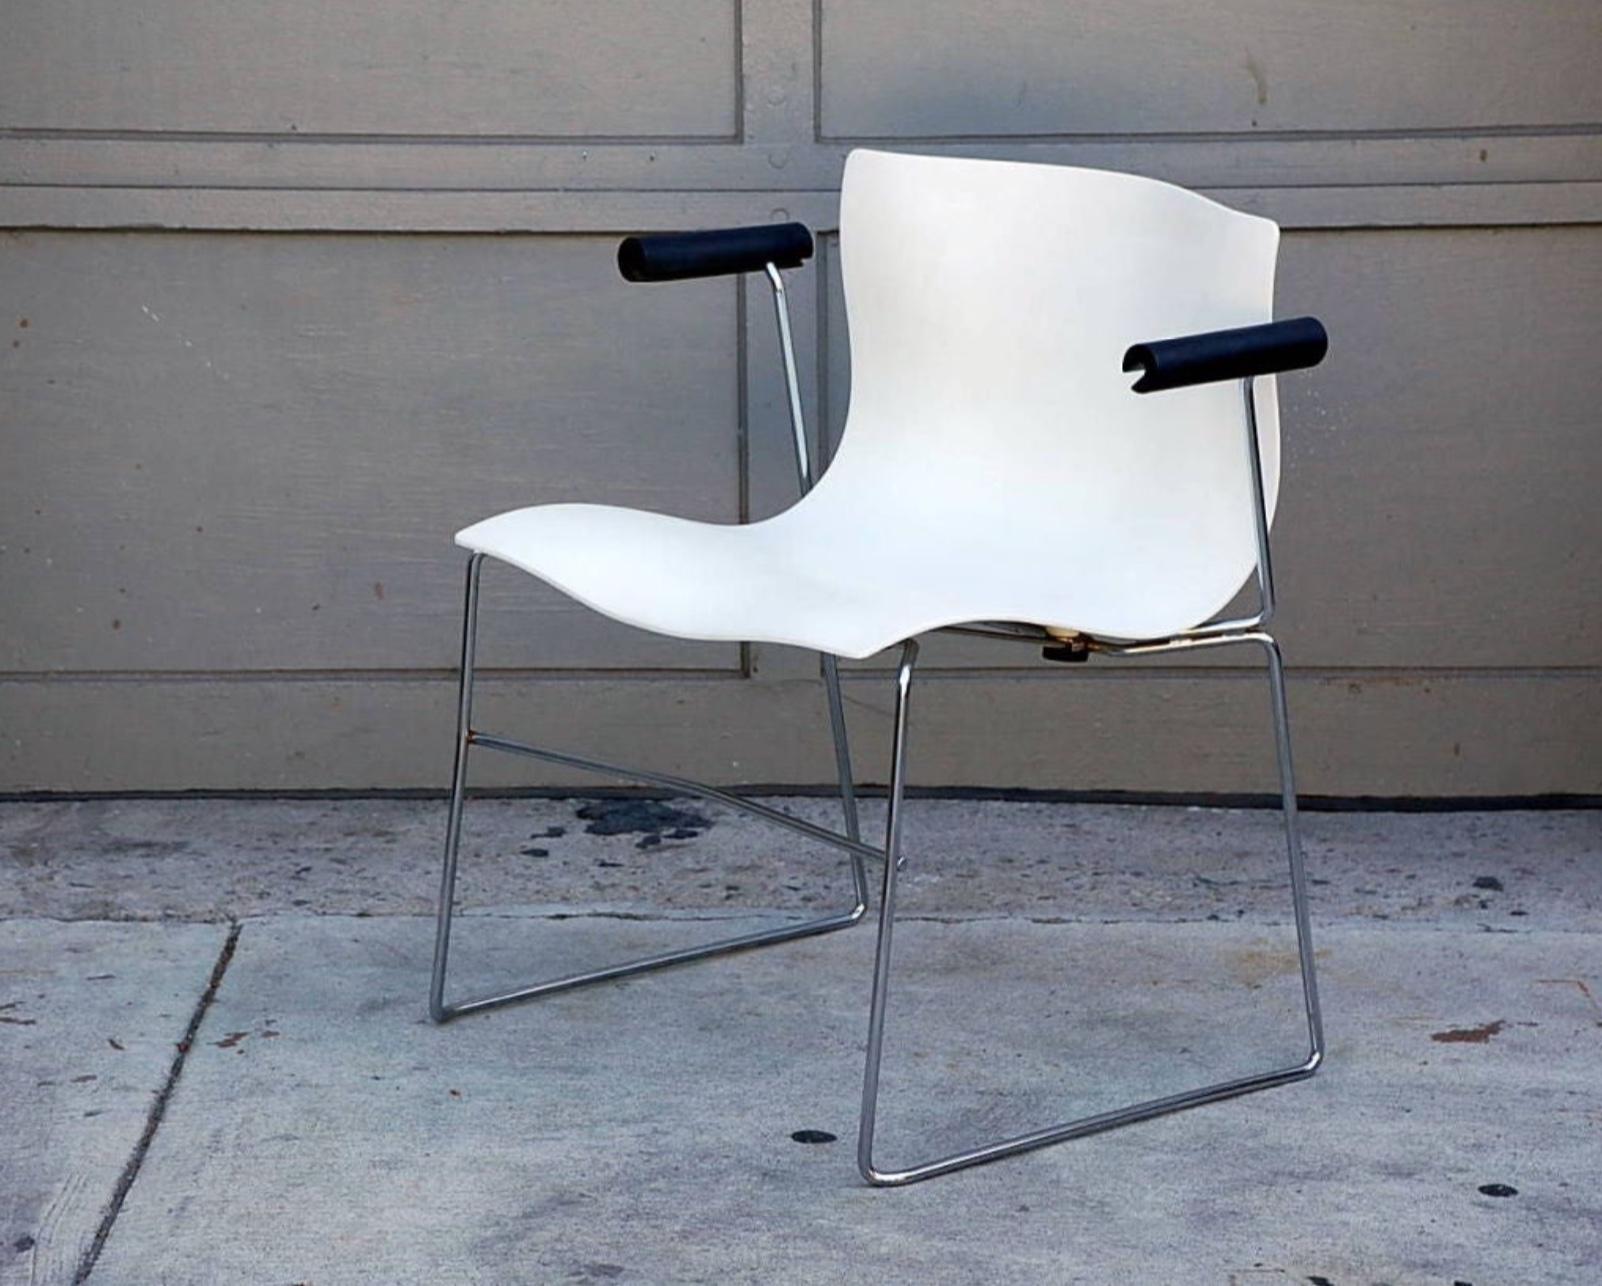 Ensemble de 4 fauteuils mouchoirs de Massimo Vignelli pour Knoll.

En 1968, Knoll a demandé à Vignelli de revoir l'identité de l'entreprise et le programme graphique, ce qui a donné naissance au logo Knoll en Helvetica et à l'introduction du rouge